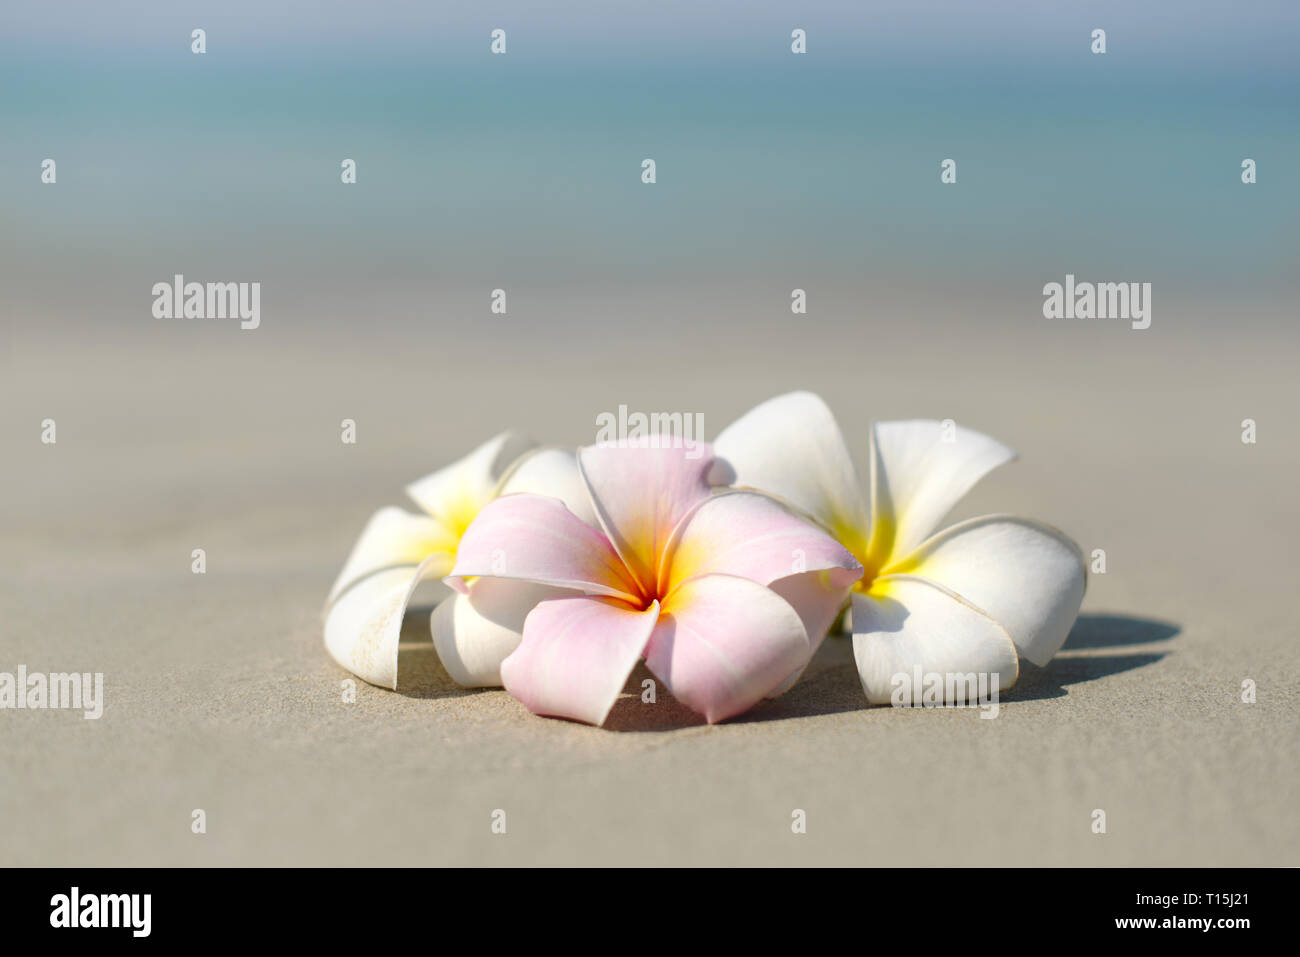 Bianco e rosa plumeria frangipani fiori sulla spiaggia sabbiosa di fronte al mare. Tropicale Vista esotici. Travel Vacation concetto. Copia gratuita dello spazio. Foto Stock